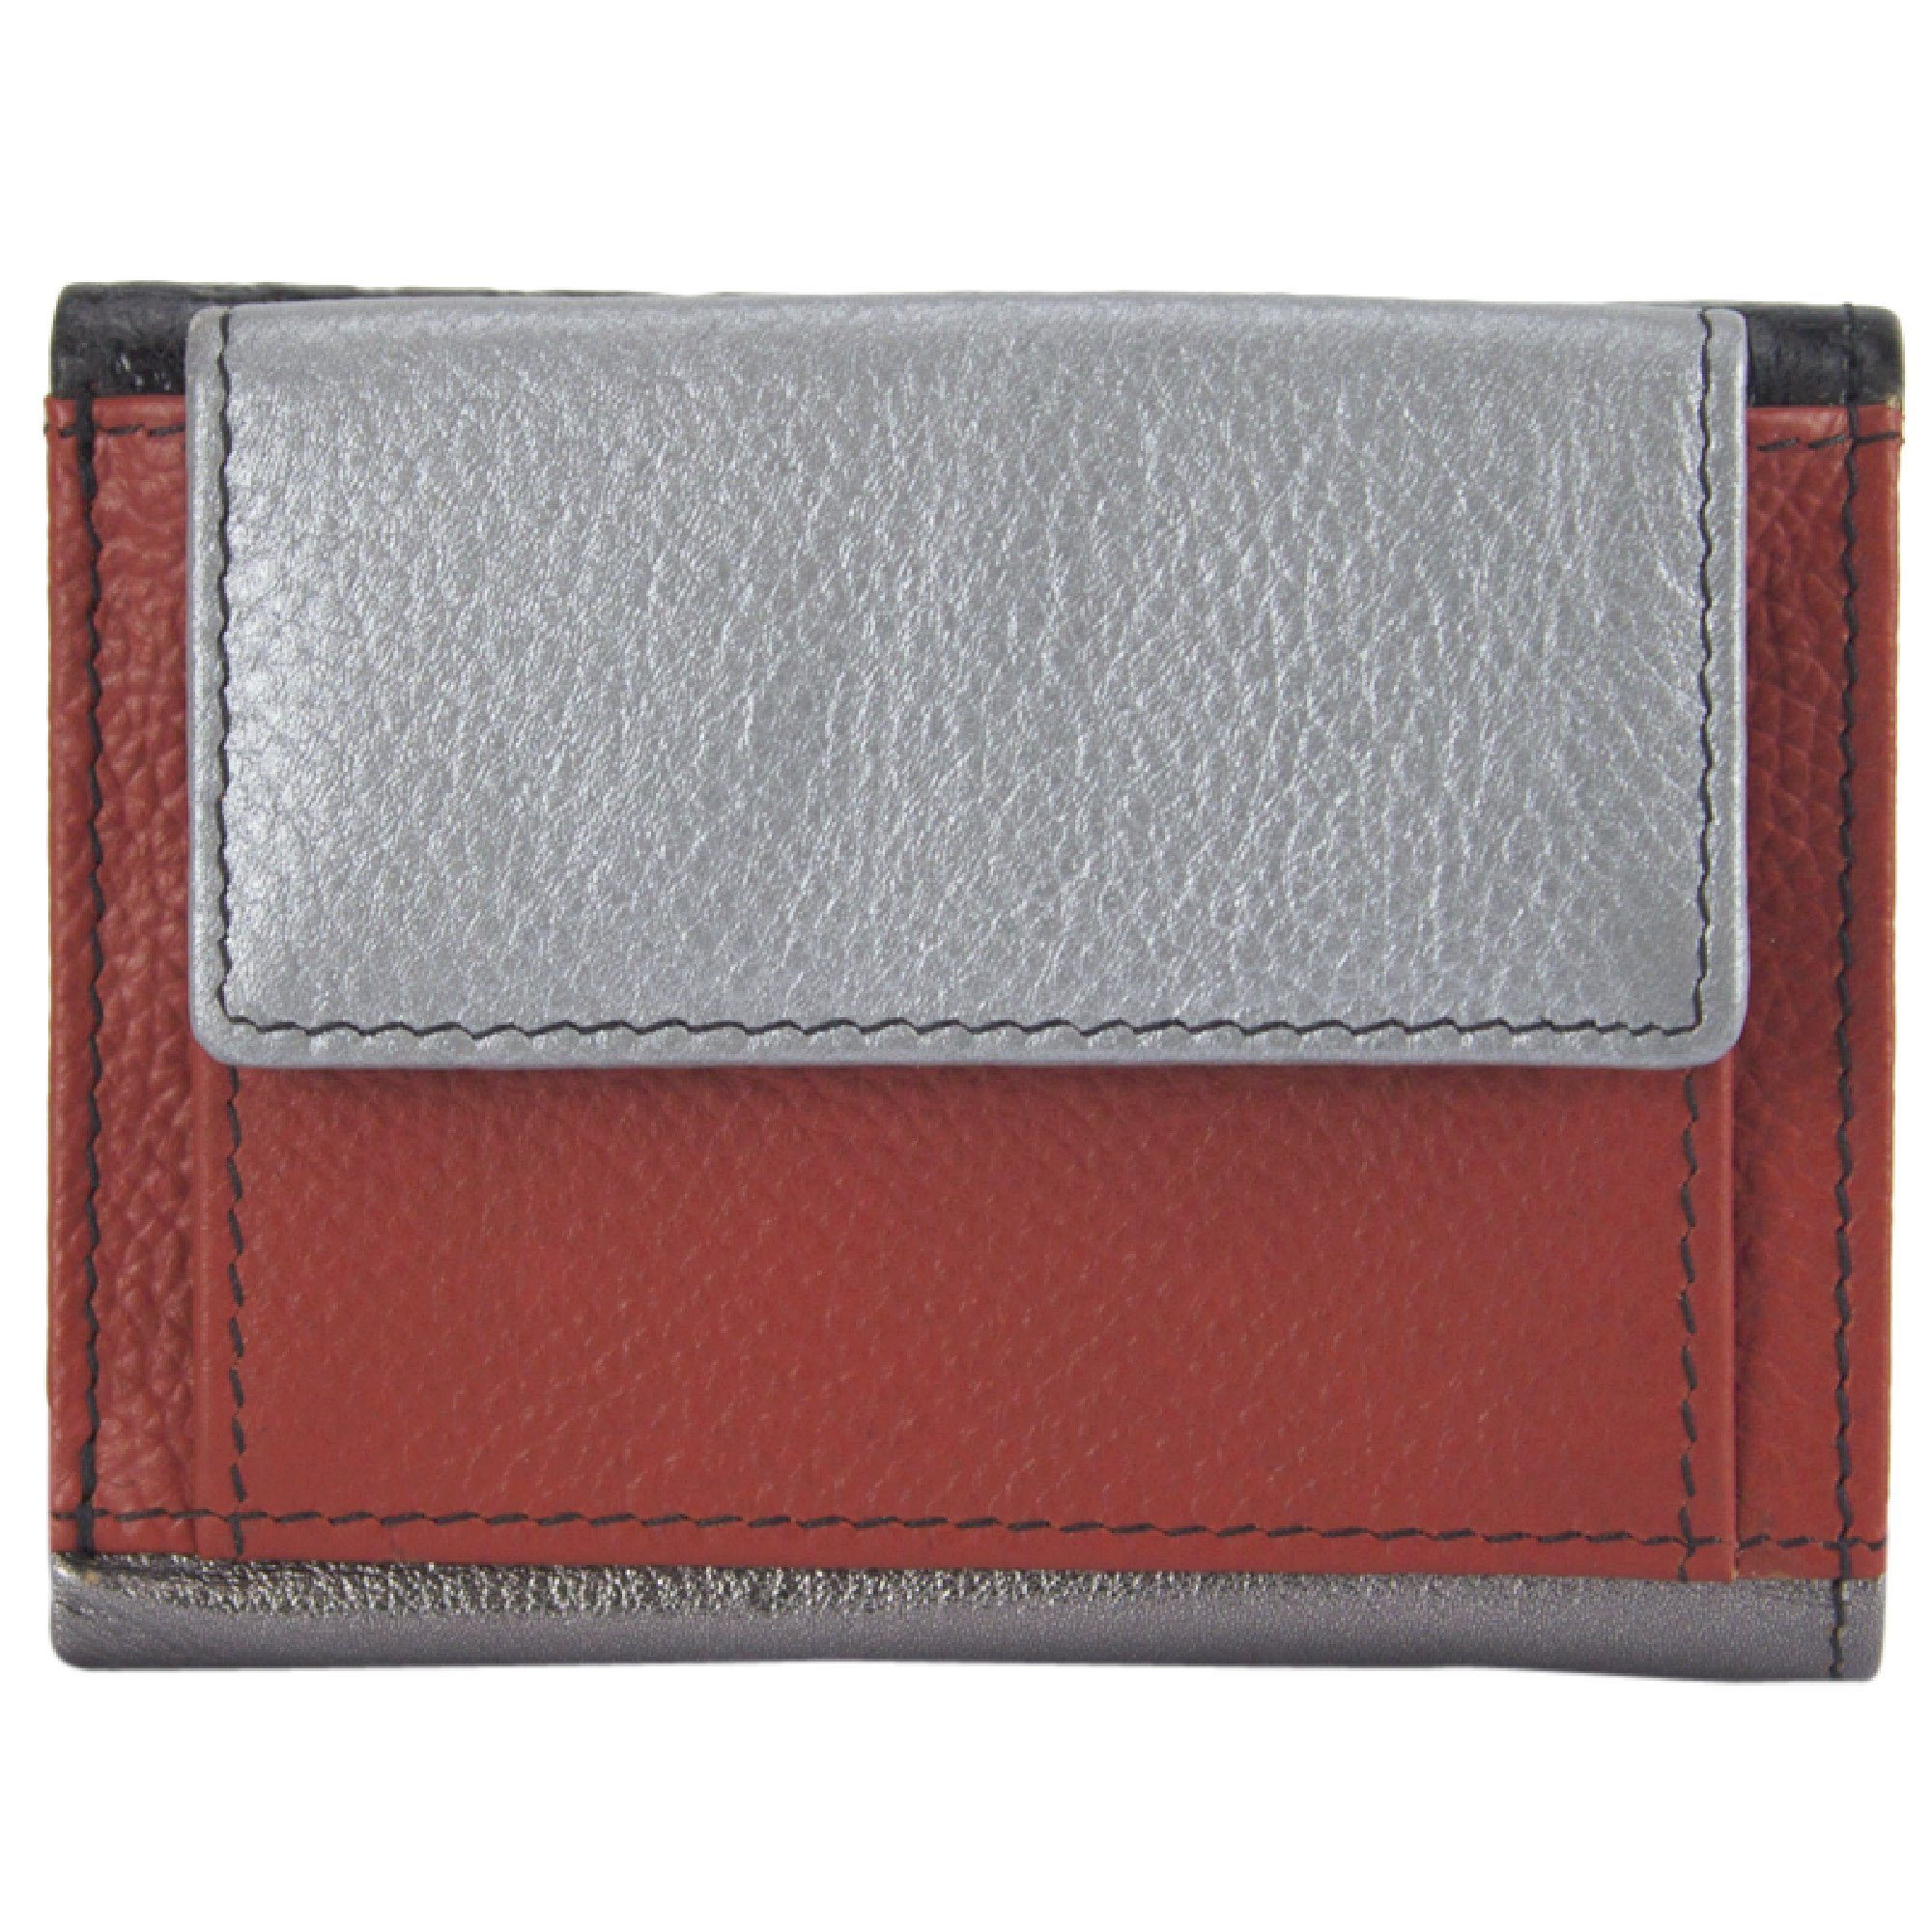 Sunsa Mini Geldbörse Mini klein Leder Geldbörse Geldbeutel Portemonnaie Brieftasche, echt Leder, aus recycelten Lederresten, mit RFID-Schutz, Unisex